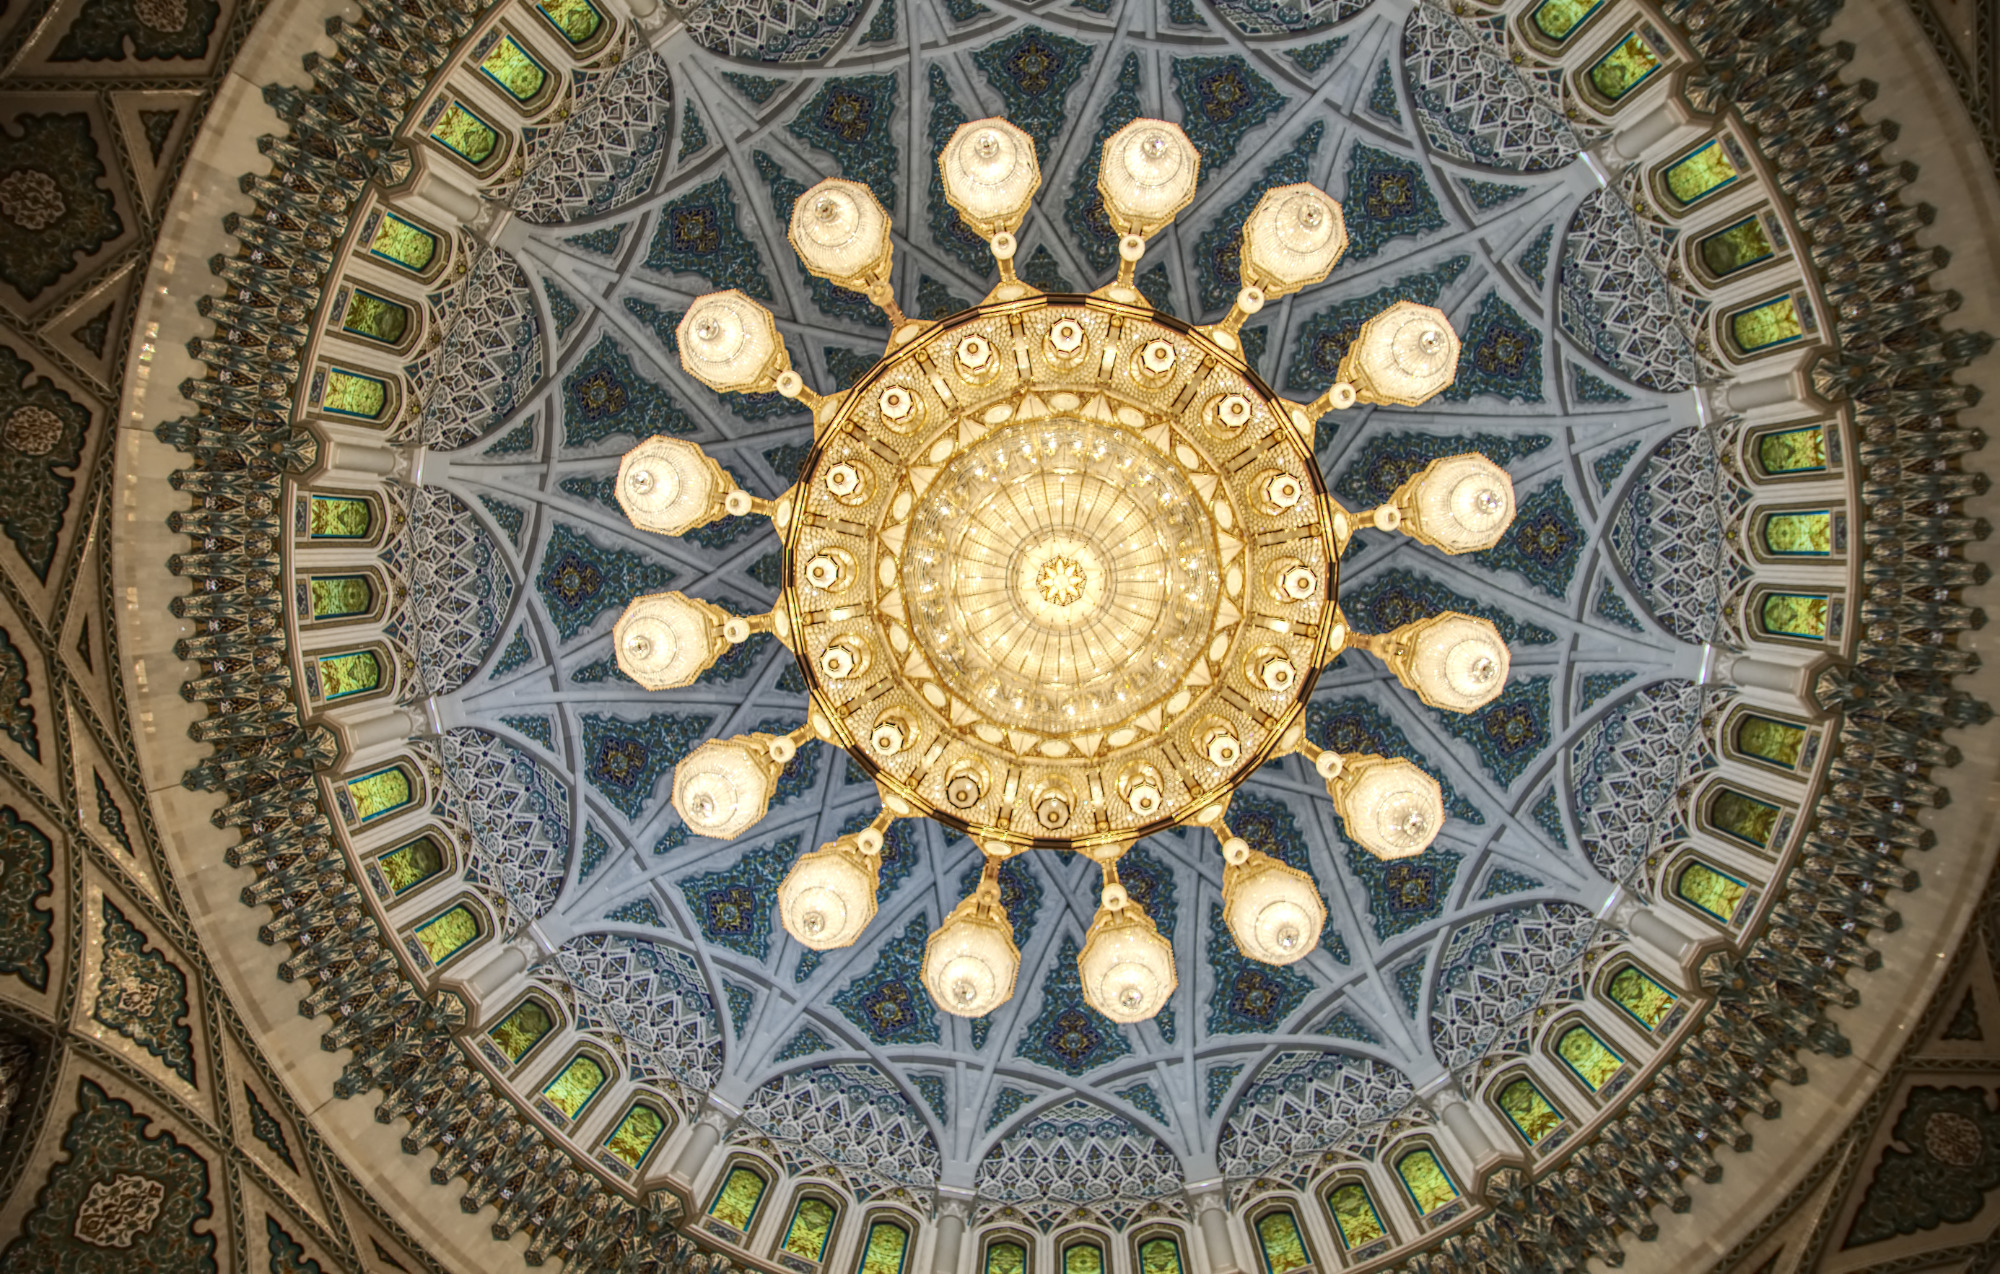 Kronleuchter in der Kuppel der großen Moschee von Mascat